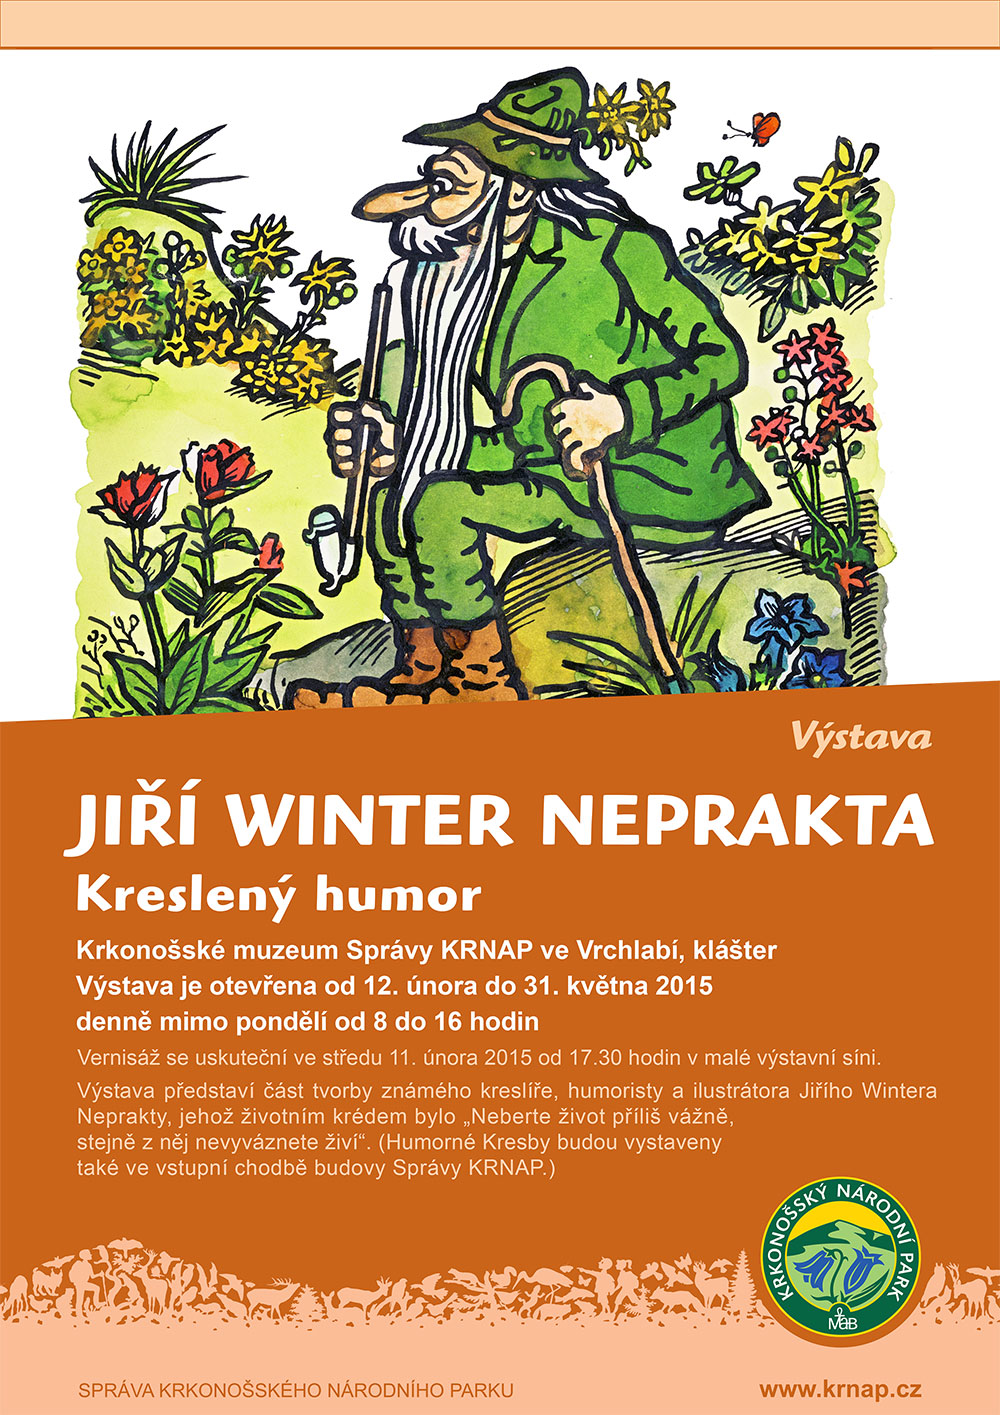 Jiří Winter Neprakta - Kreslený humor